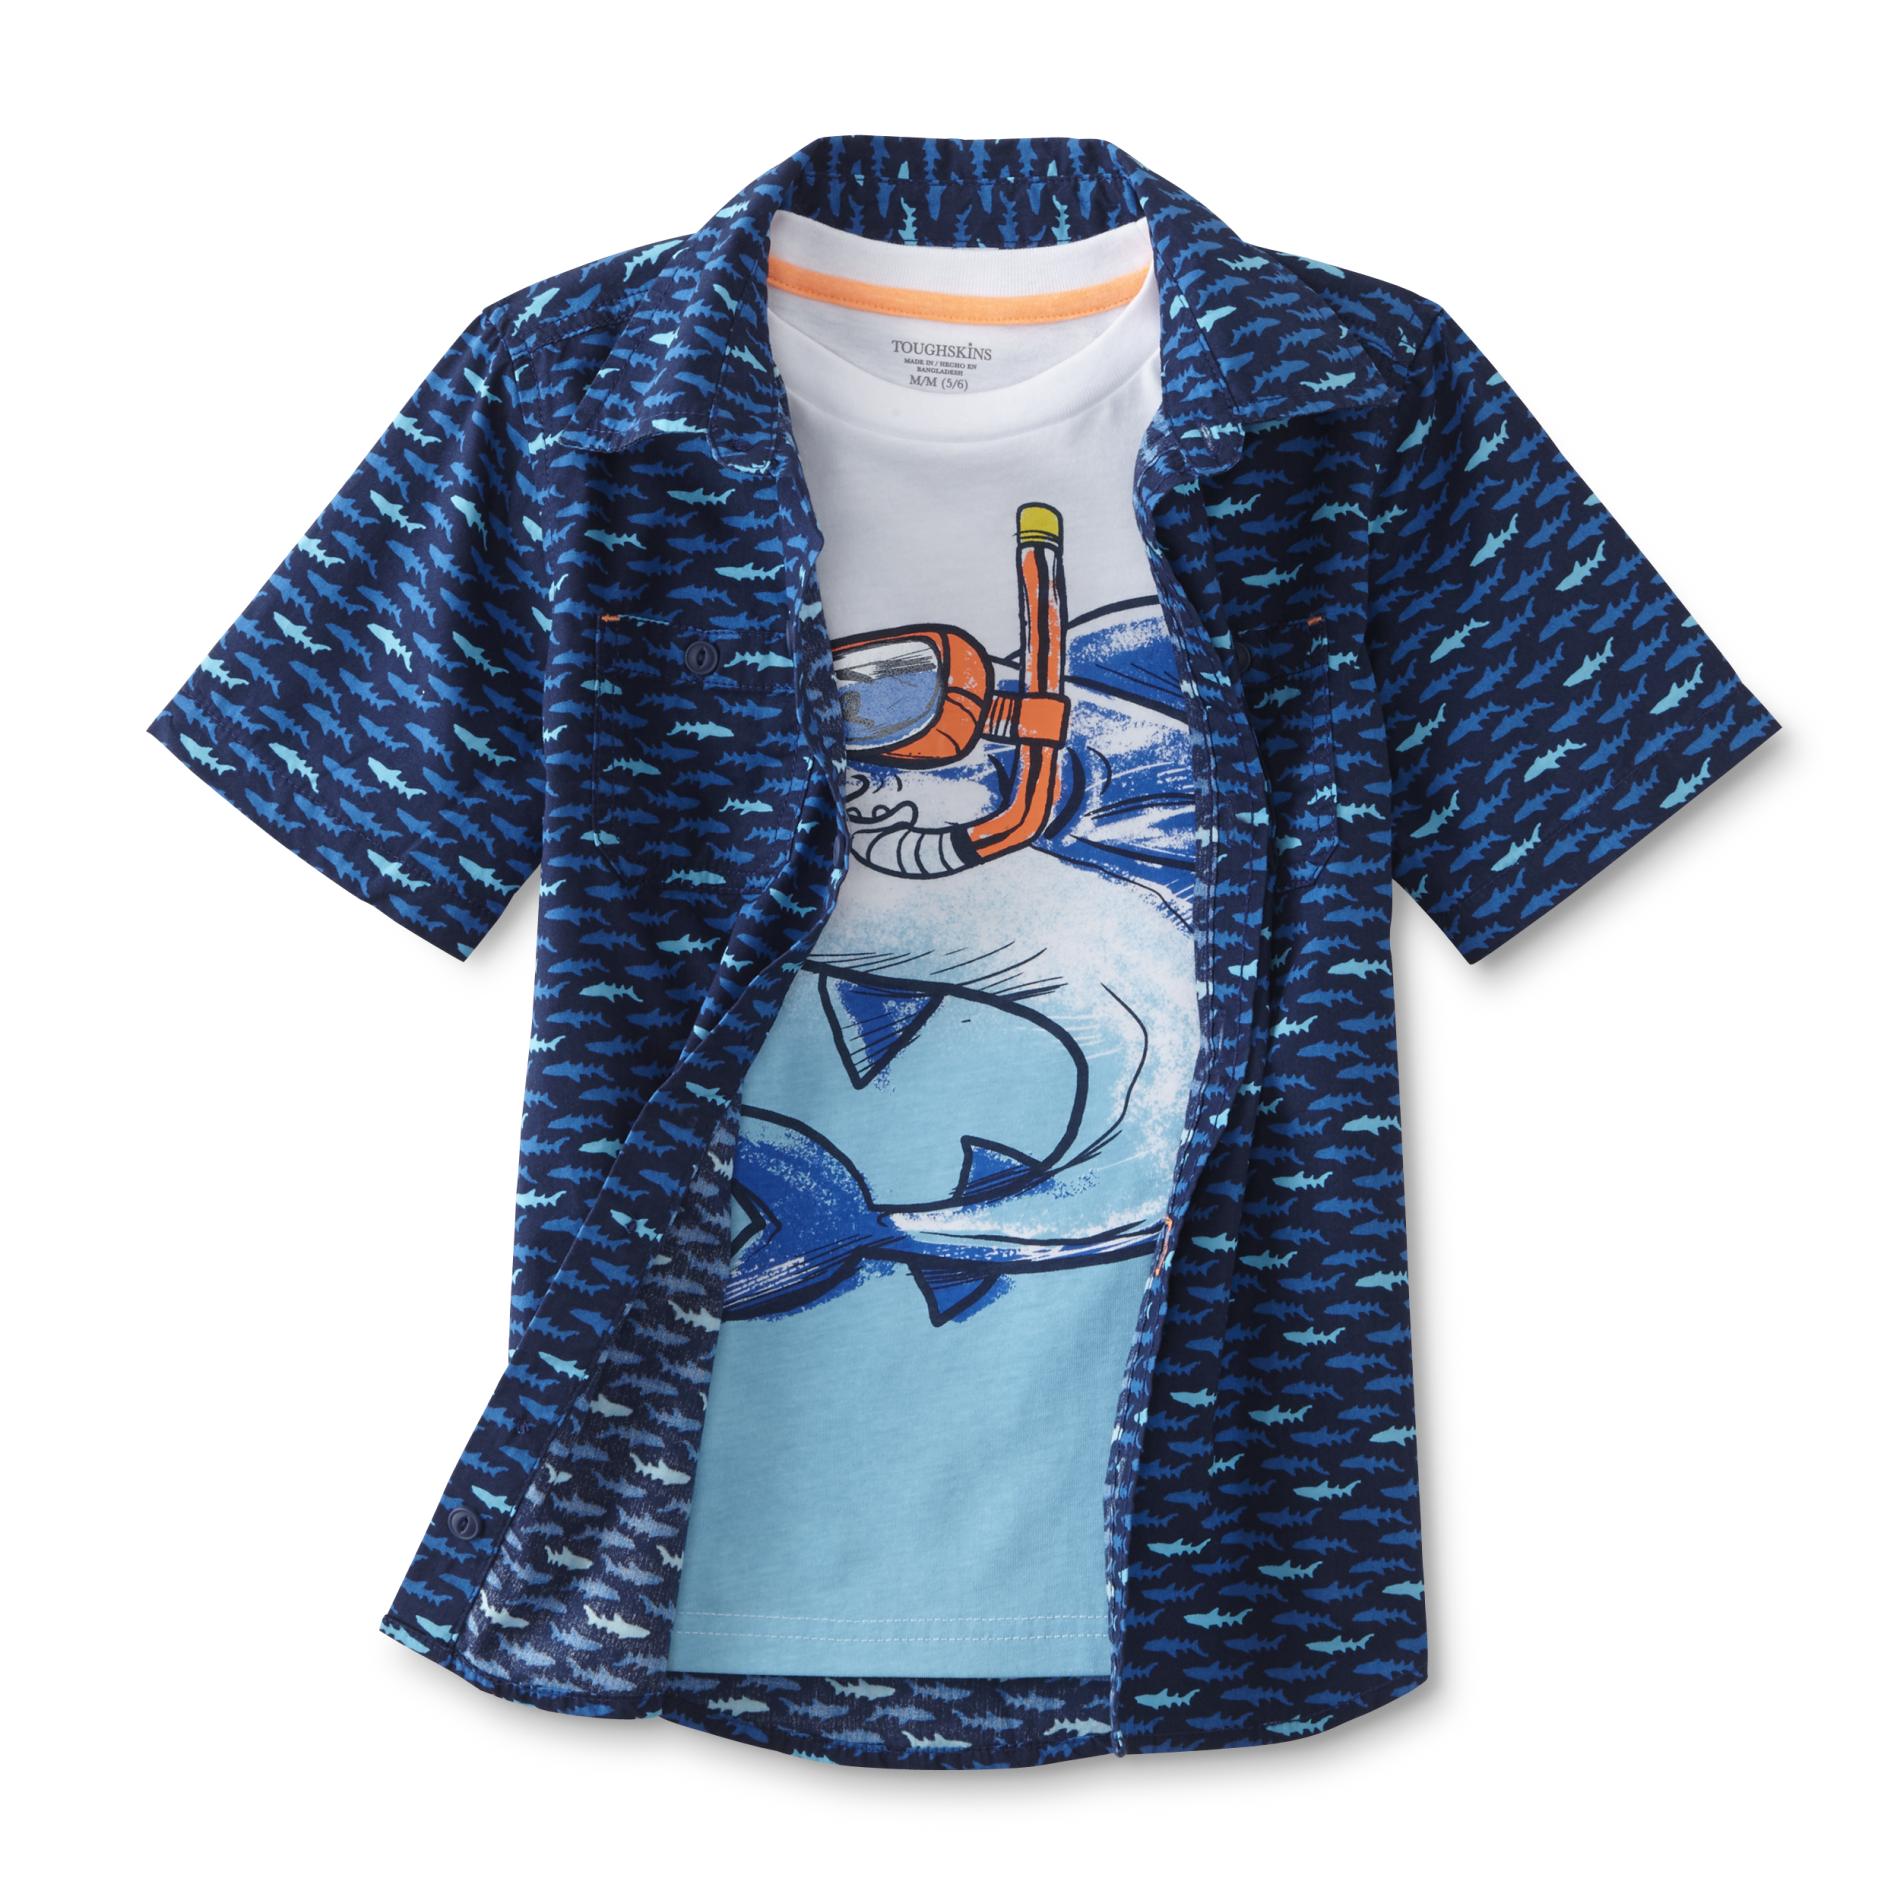 Toughskins Boy's Button-Front Shirt & T-Shirt - Sharks